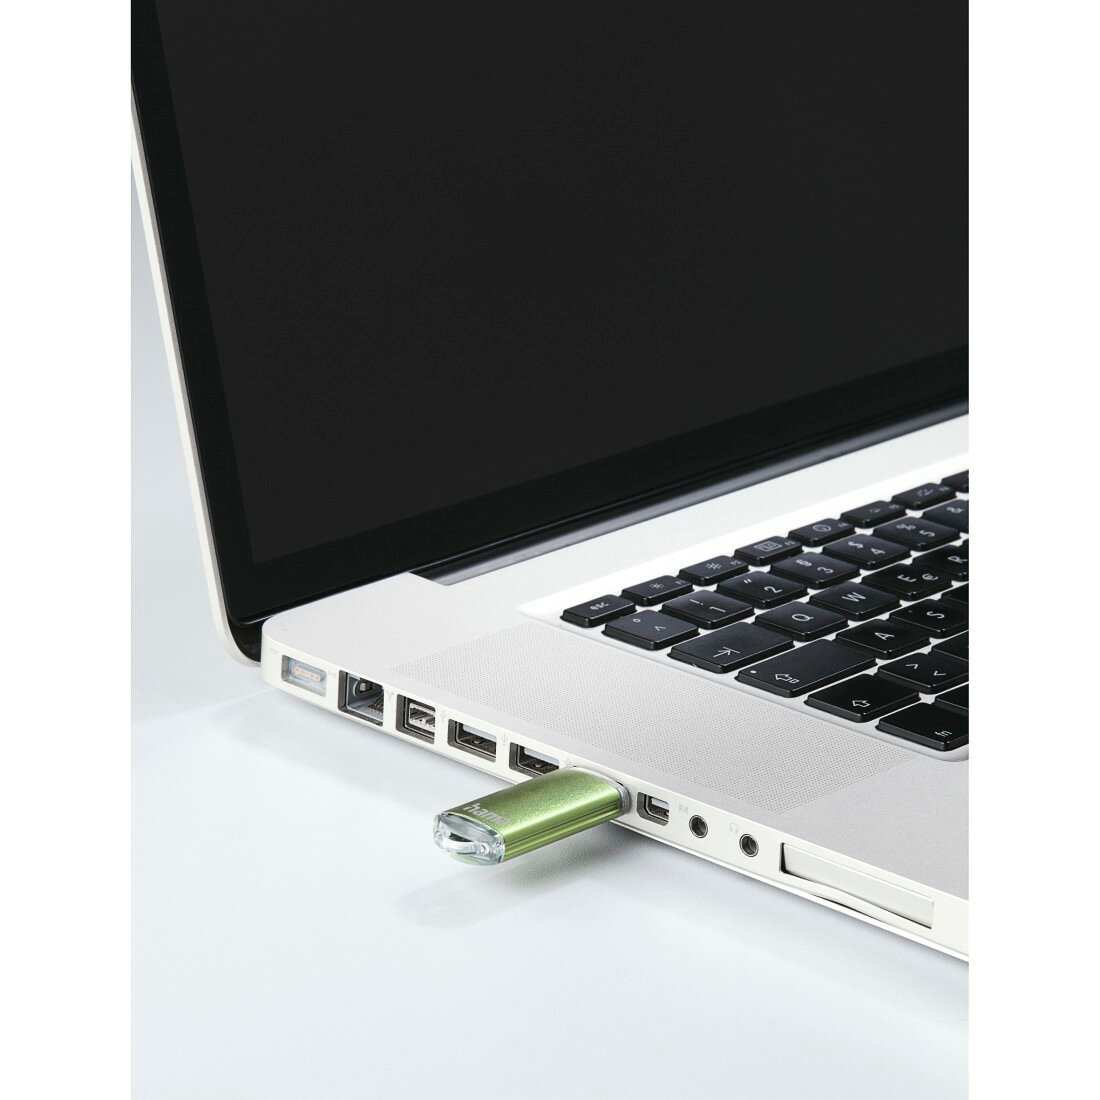 PendriveHama Leta USB 2.0 64GB podłączony do laptopa